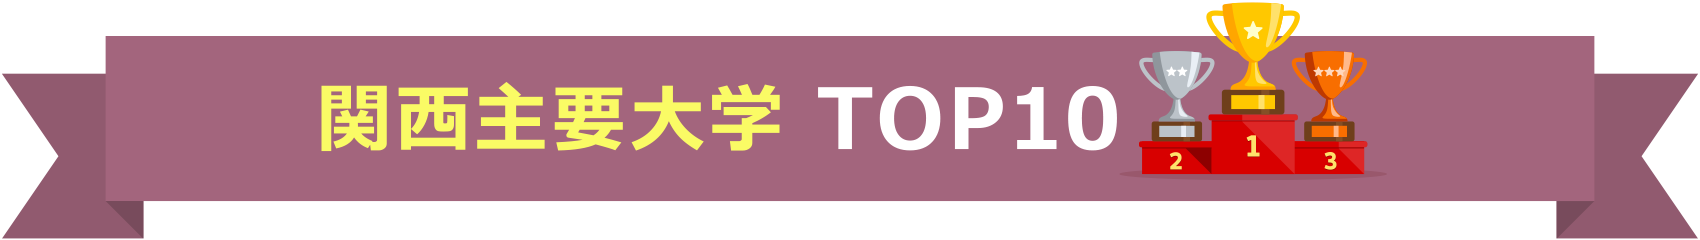 関西主要大学 TOP10